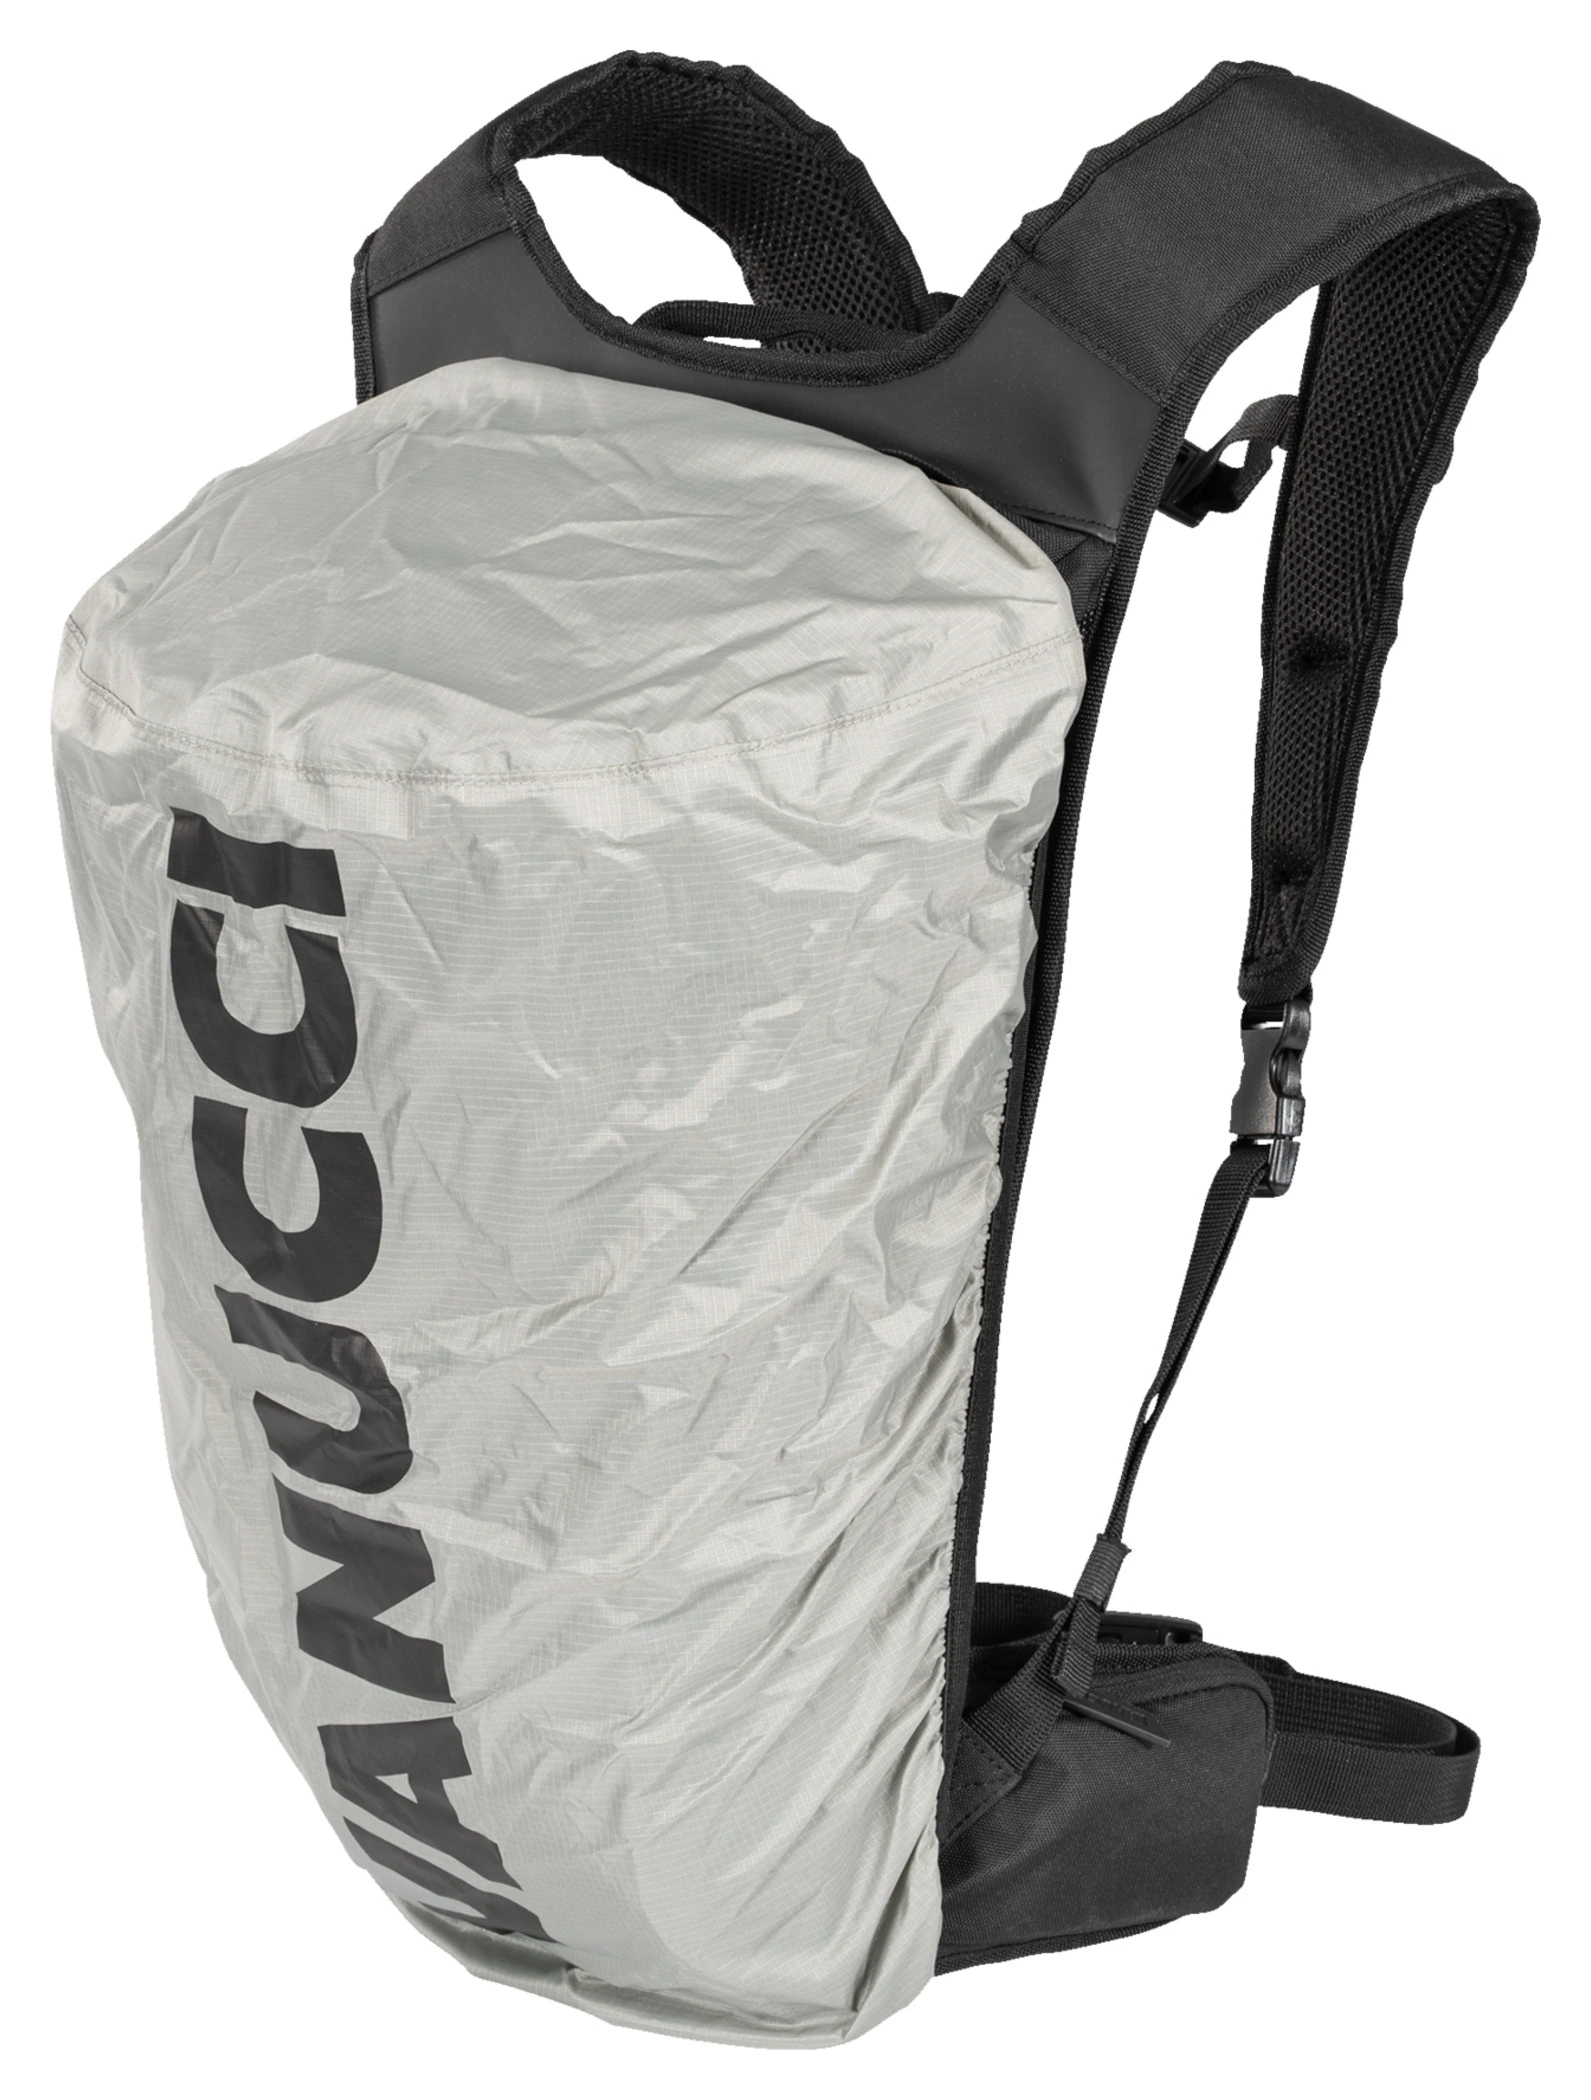 Voyage moto : le sac à compression, fallait y penser, Vanucci l'a